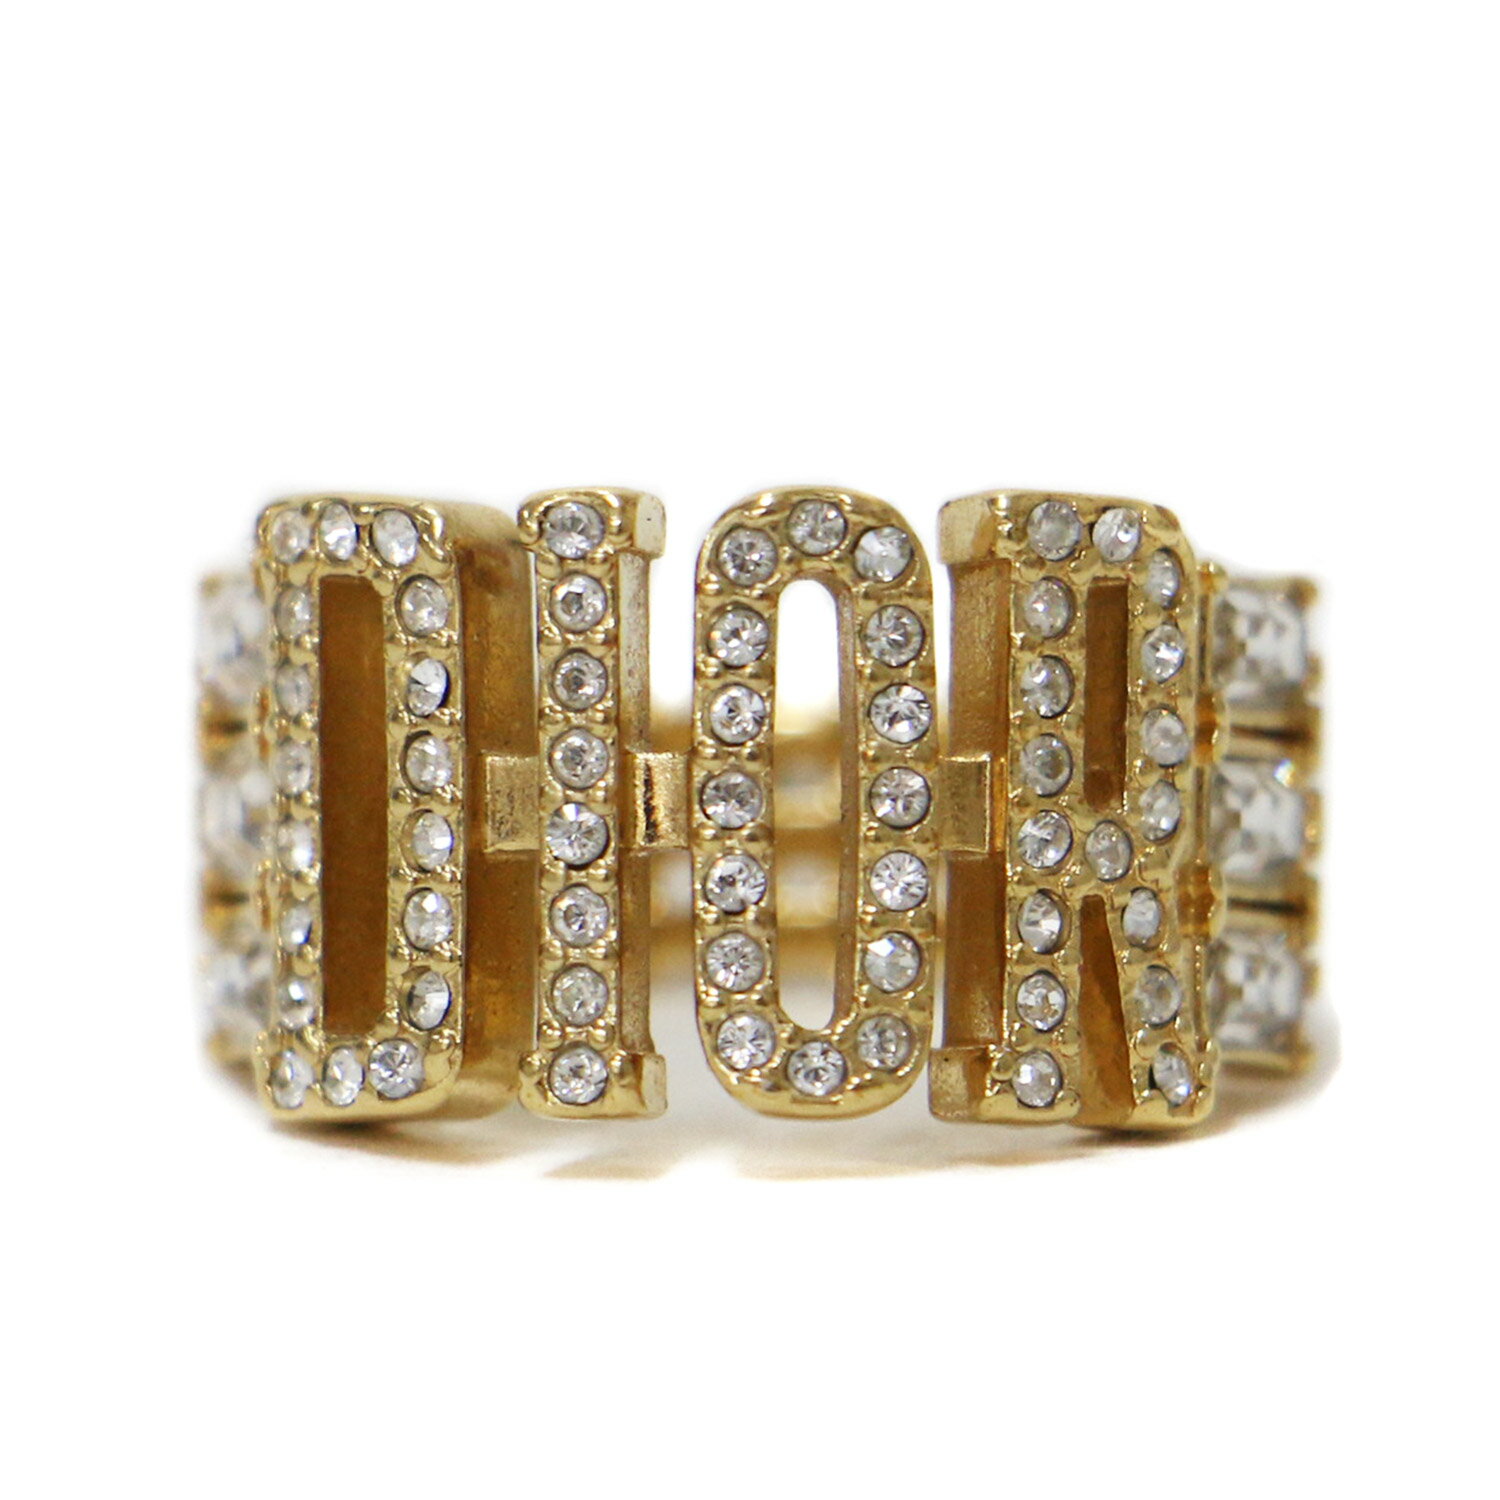 Christian Dior クリスチャンディオール リング 指輪 ゴールド S(9号) ロゴ ラインストーン ビジュー アクセサリー ブランド【レディース】【中古】【美品】【K4088】